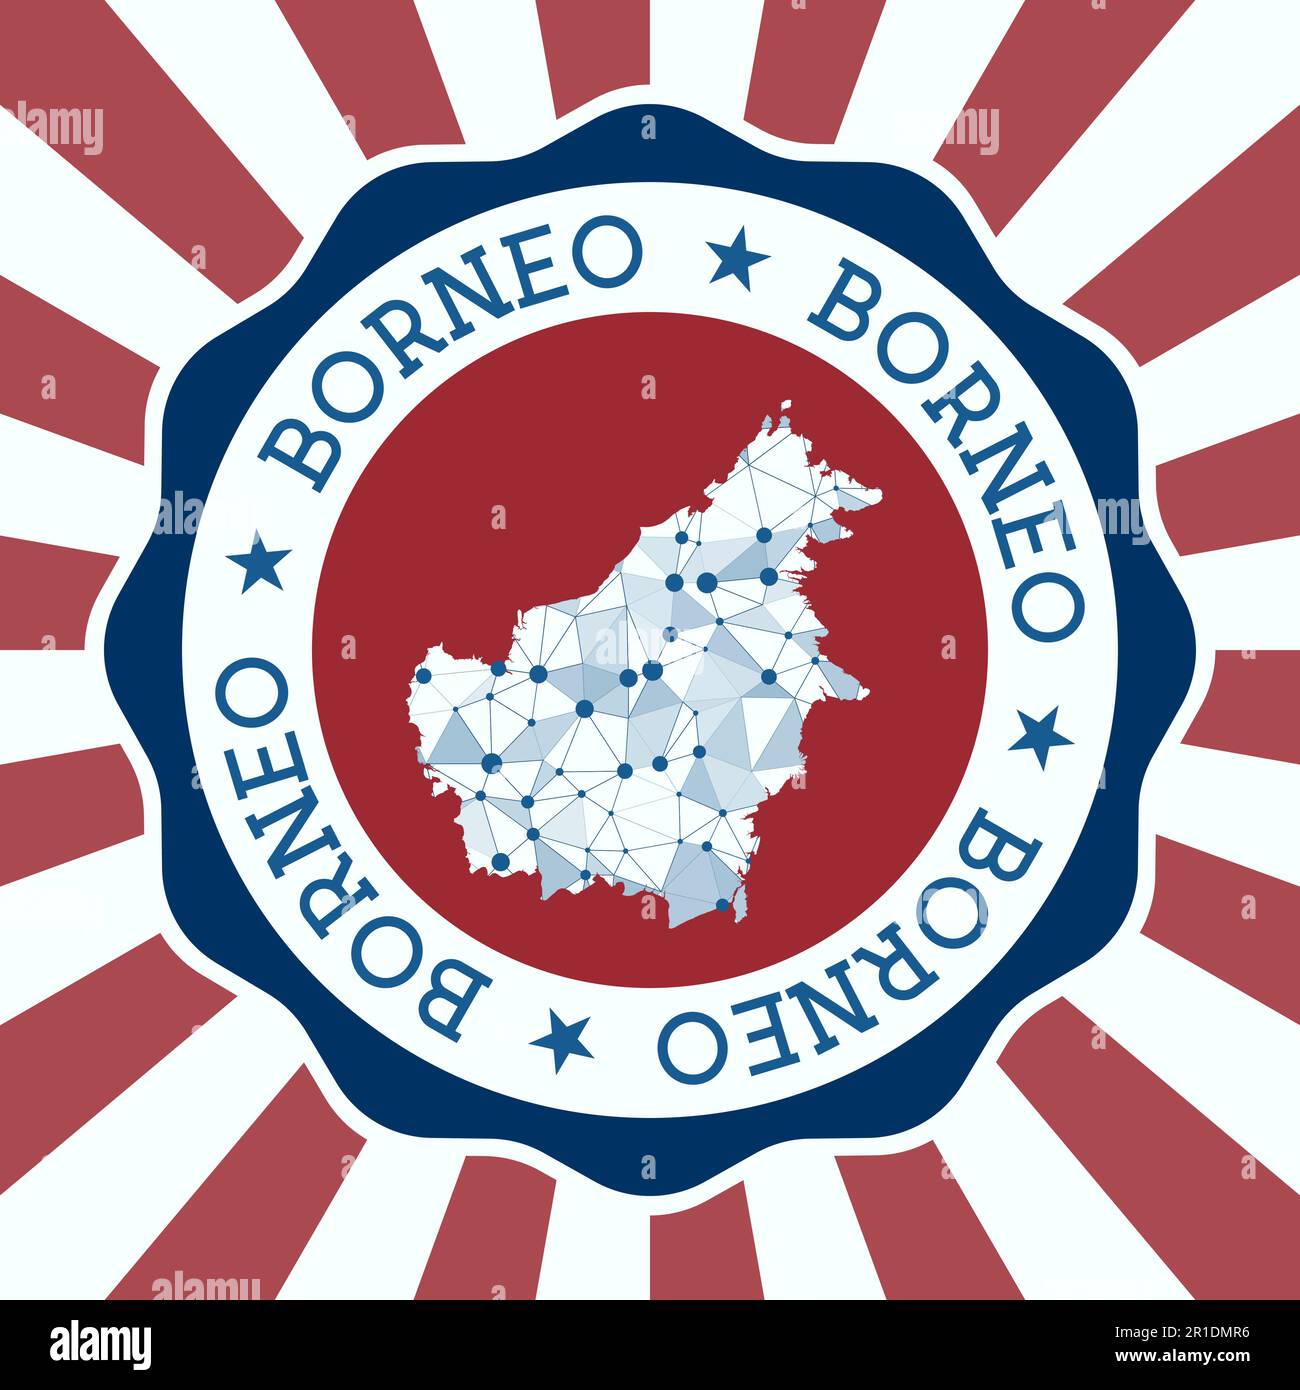 Distintivo Borneo. Logo rotondo dell'isola con mappa a maglia triangolare e raggi radiali. Vettore EPS10. Illustrazione Vettoriale